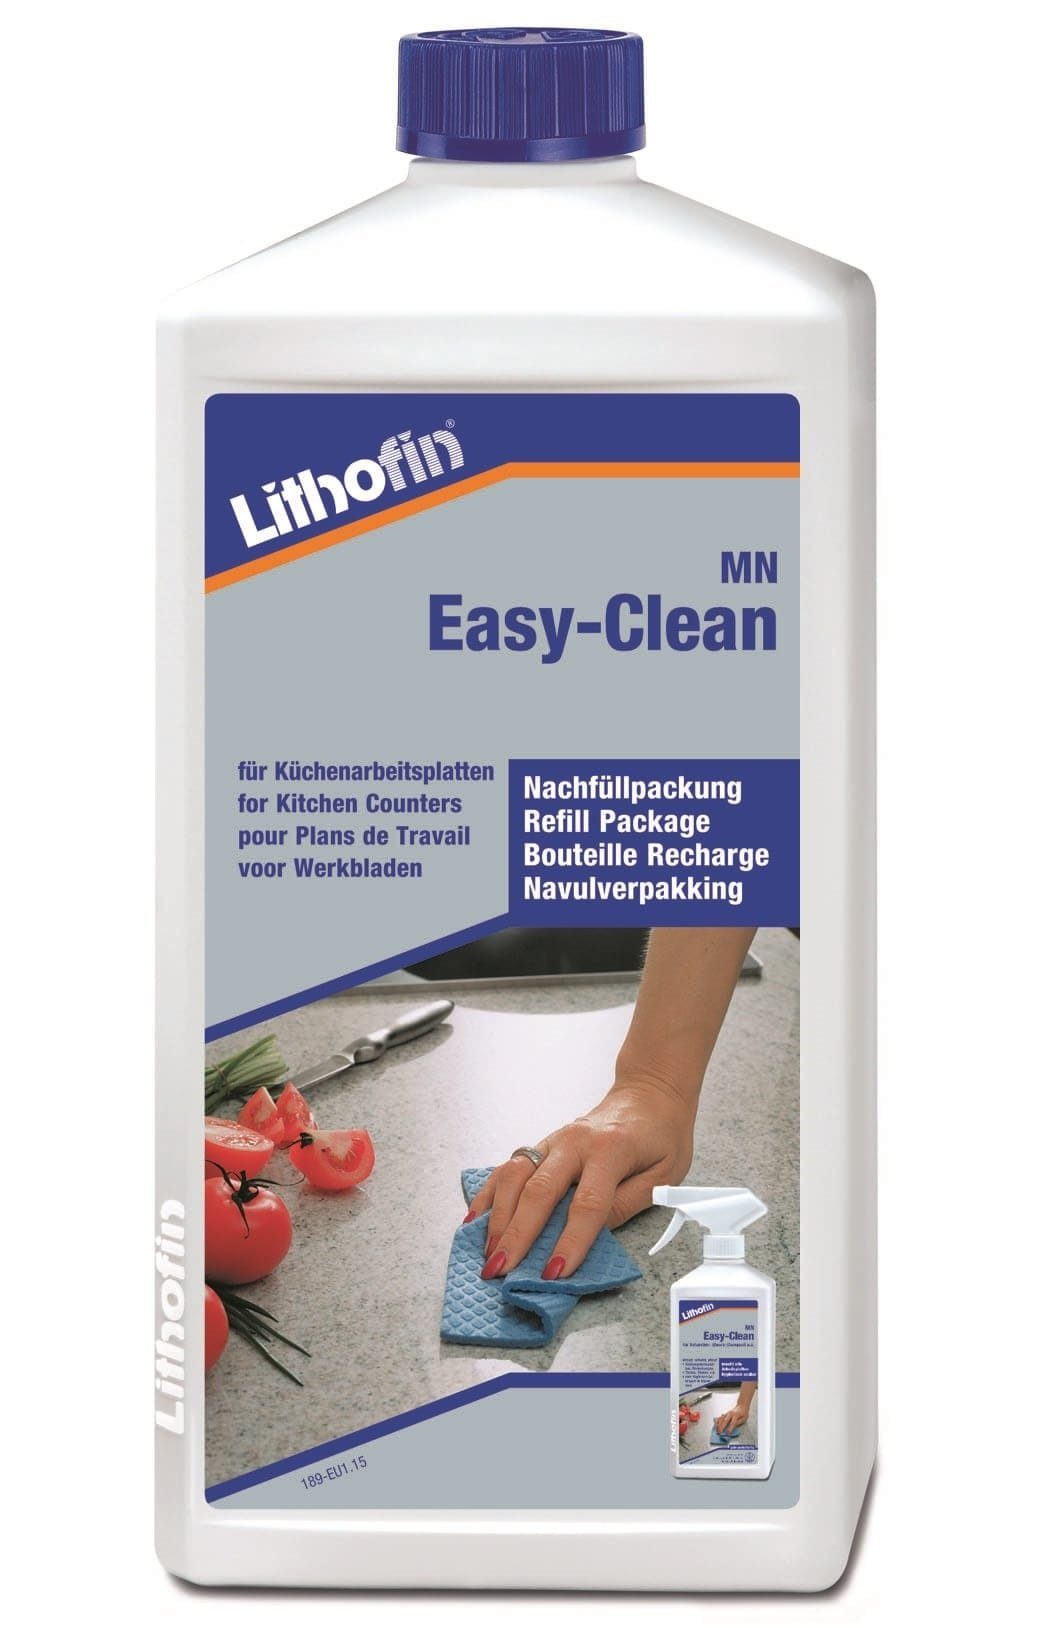 Lithofin Nachfüllflasche Ltr 1 MN LITHOFIN Easy Naturstein-Reiniger Clean